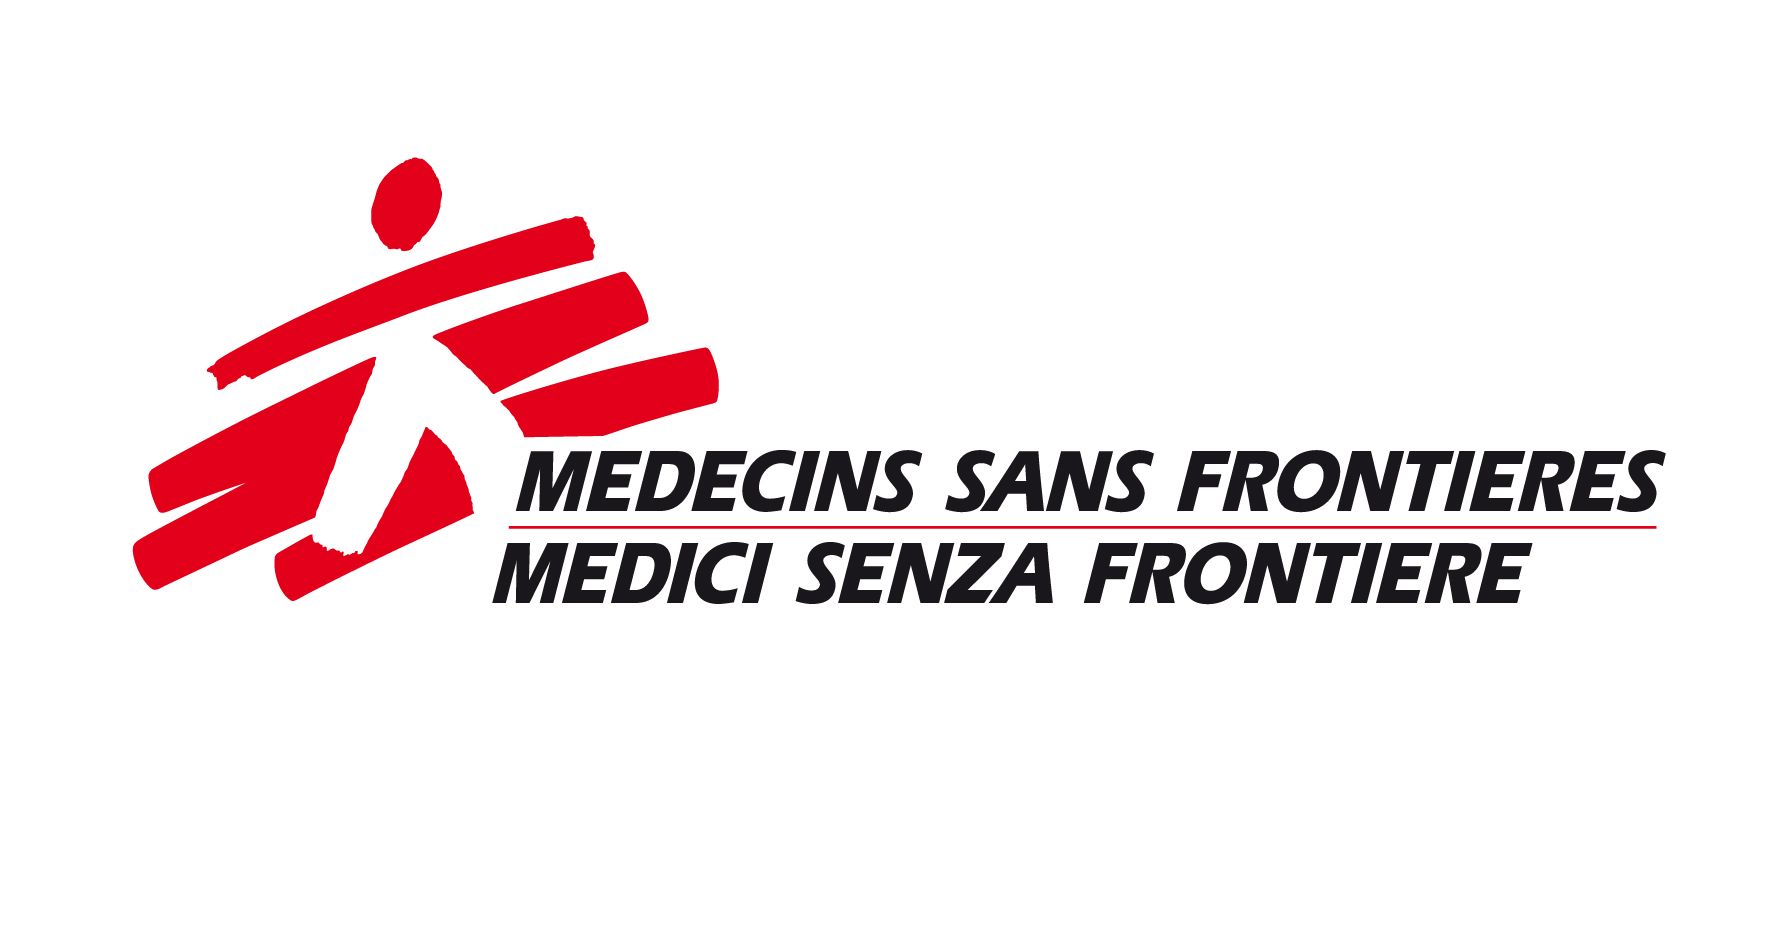 Medici Senza Frontiere logo